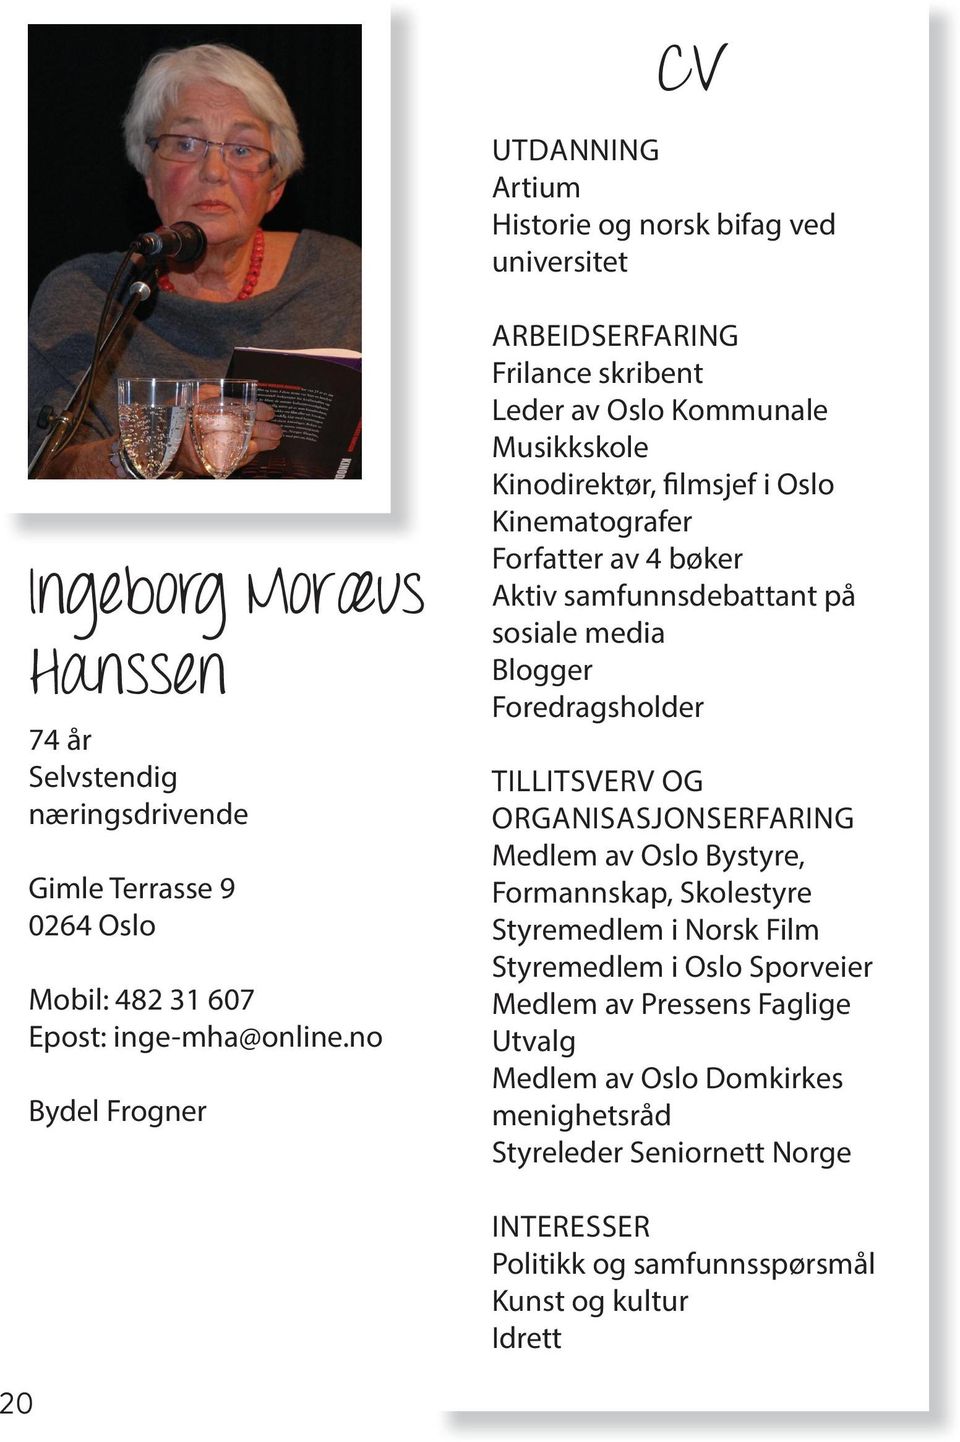 no Bydel Frogner Frilance skribent Leder av Oslo Kommunale Musikkskole Kinodirektør, filmsjef i Oslo Kinematografer Forfatter av 4 bøker Aktiv